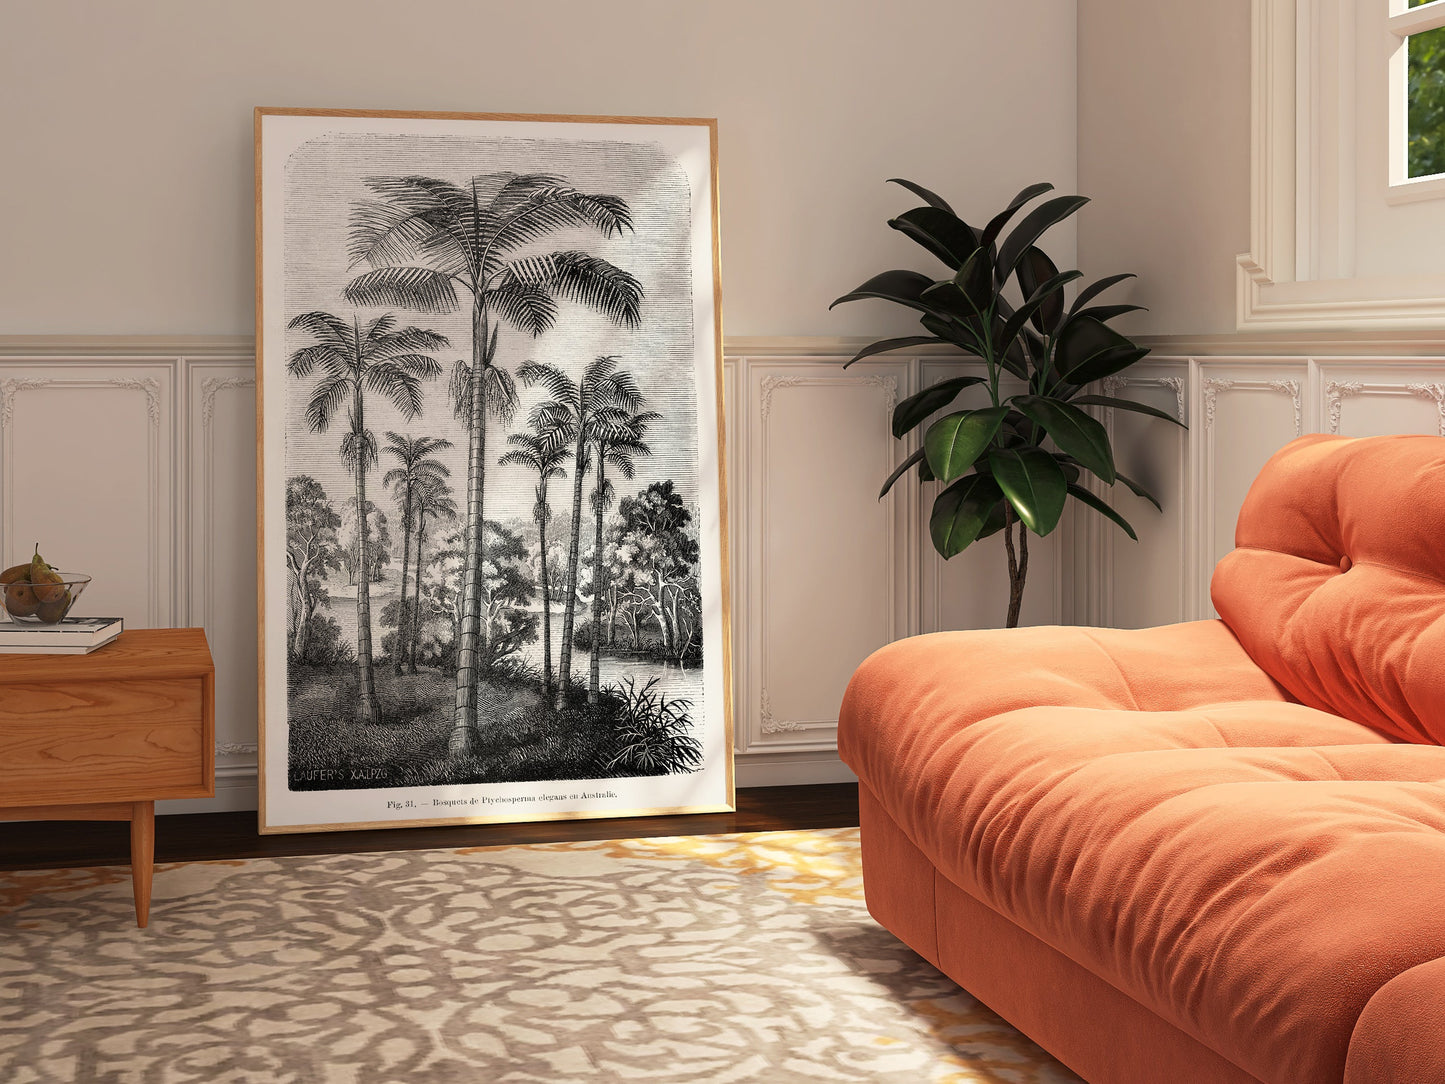 Vintage Palm Tree Illustration Art Print